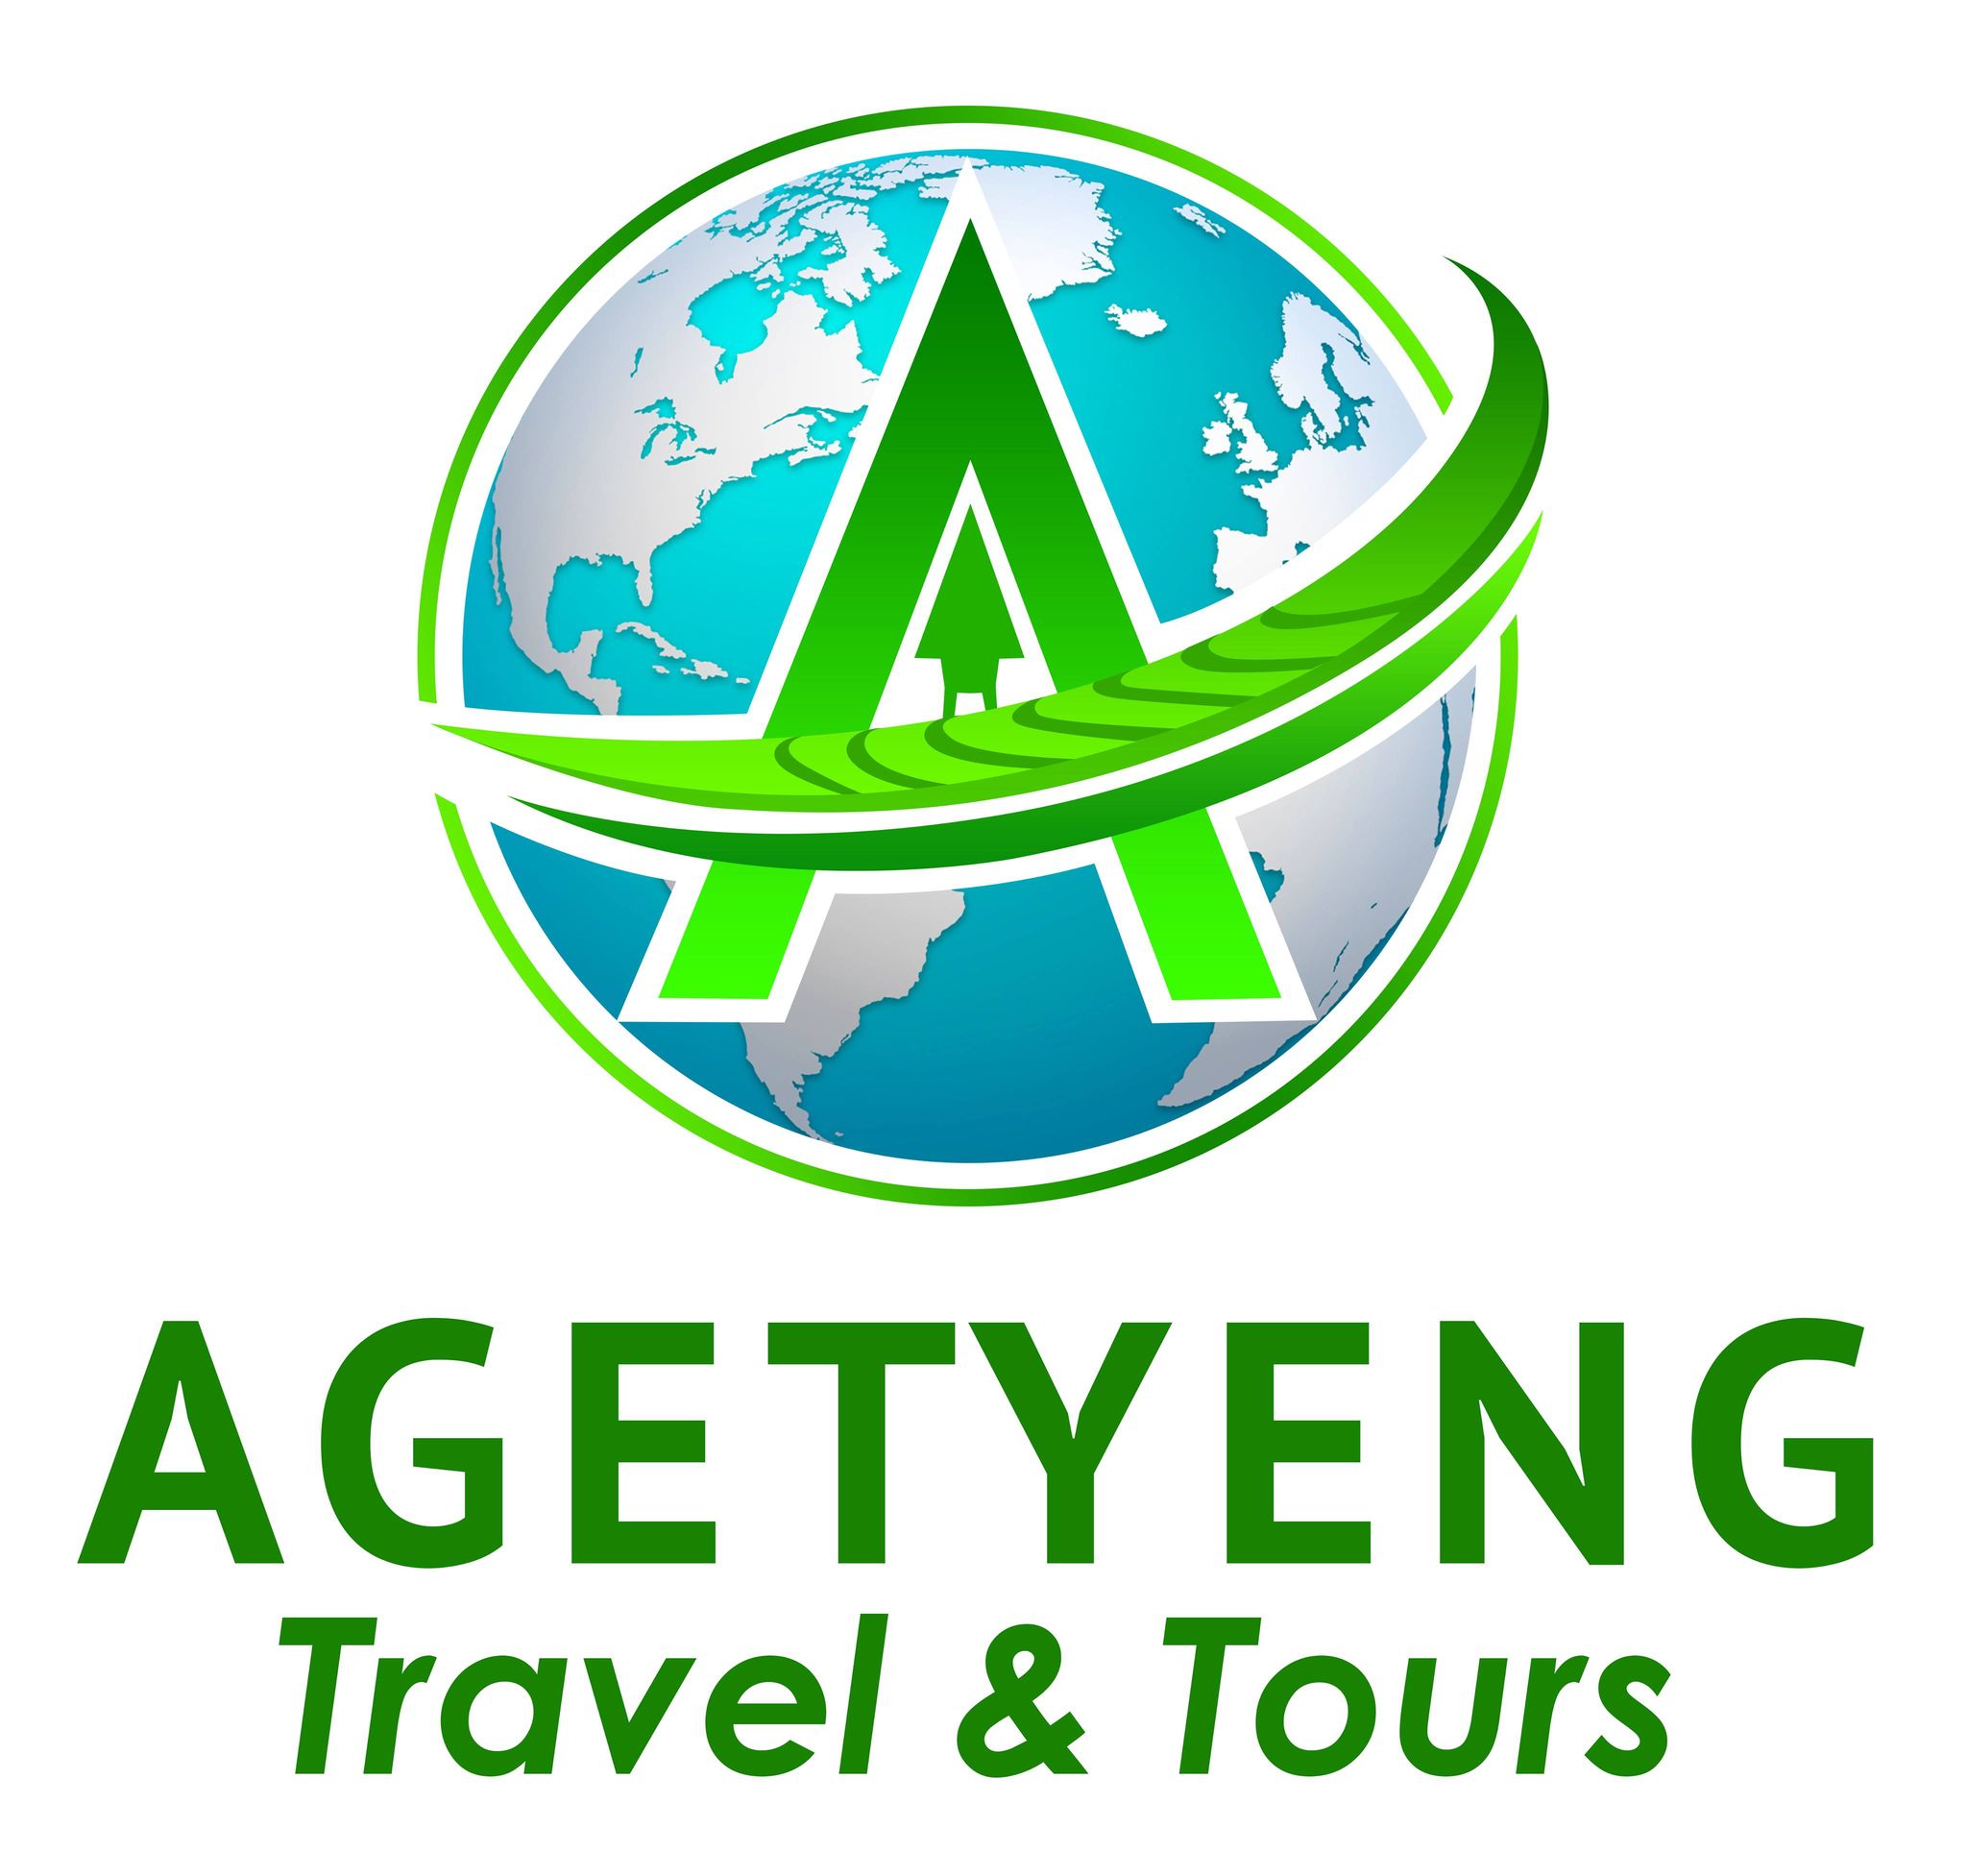 AGETYENG TRAVEL AND TOURS